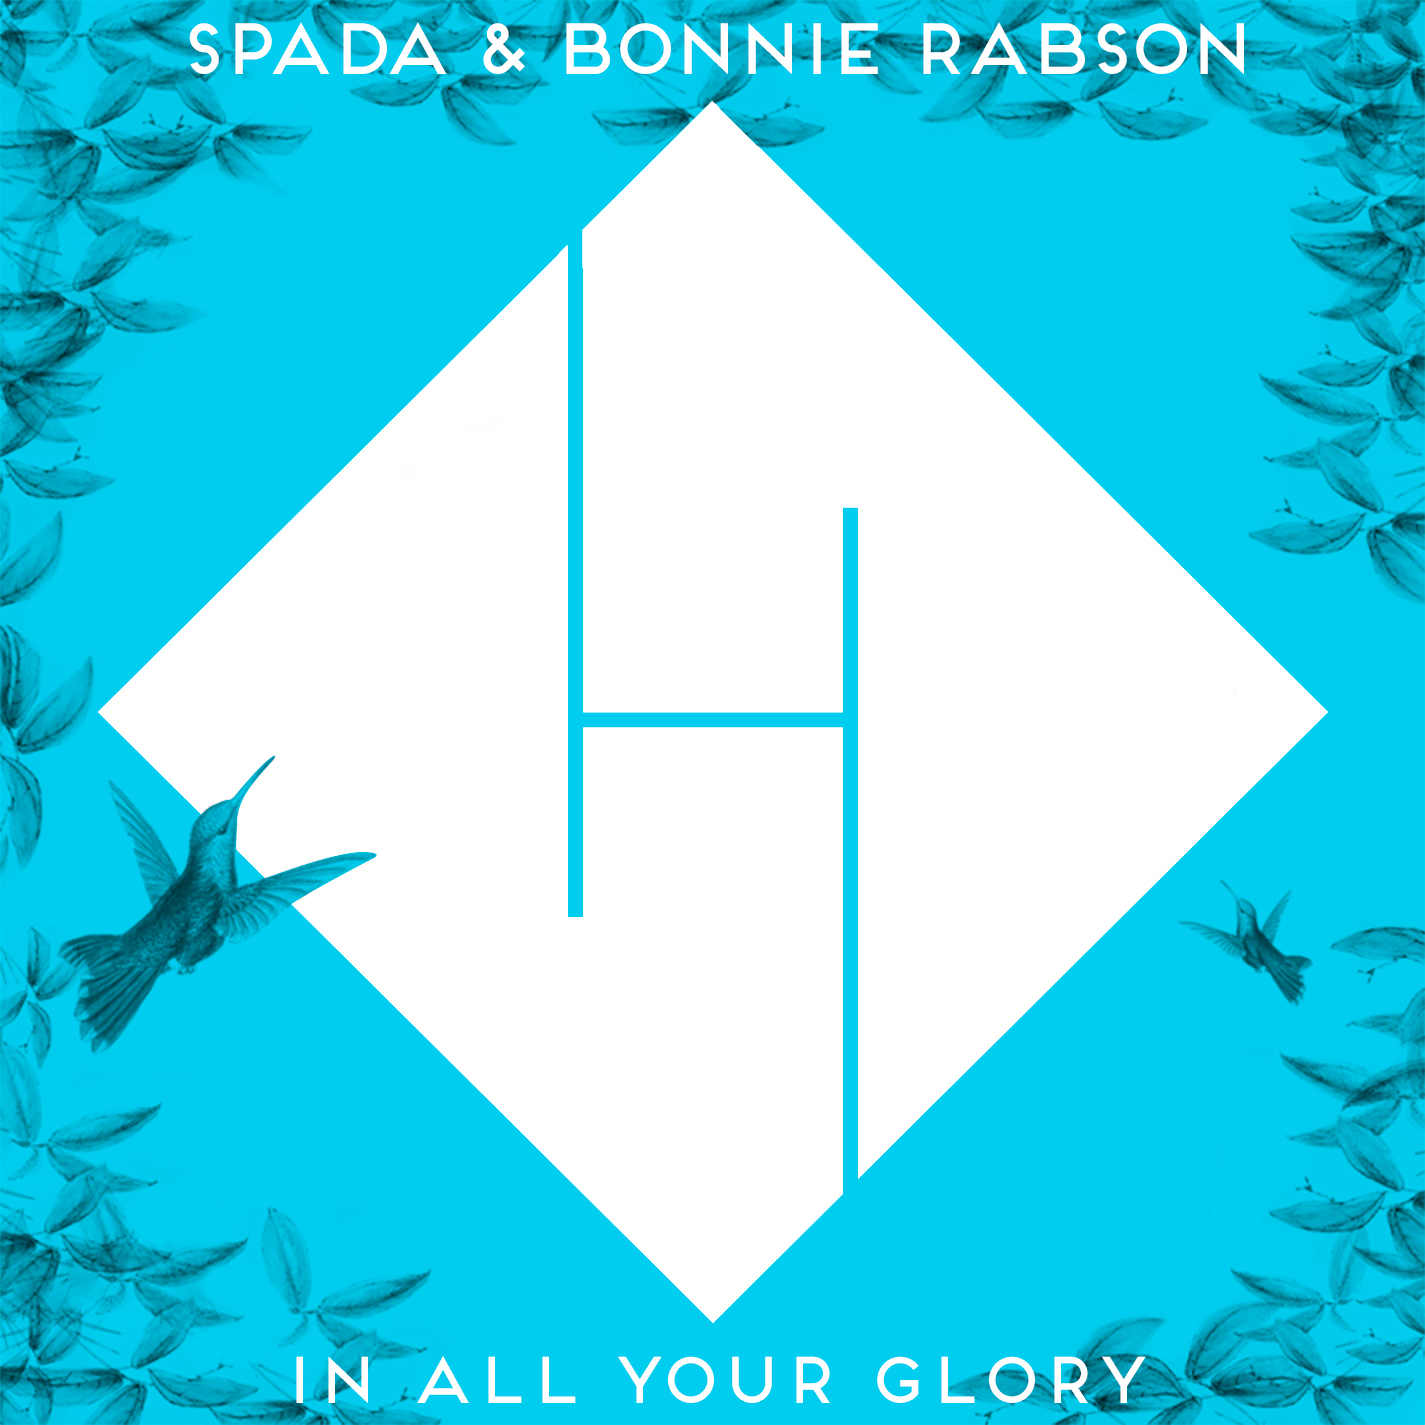 Luchdaich sìos In All Your Glory - Spada & Bonnie Rabson (Remix Boris Brejcha) PREVIEW